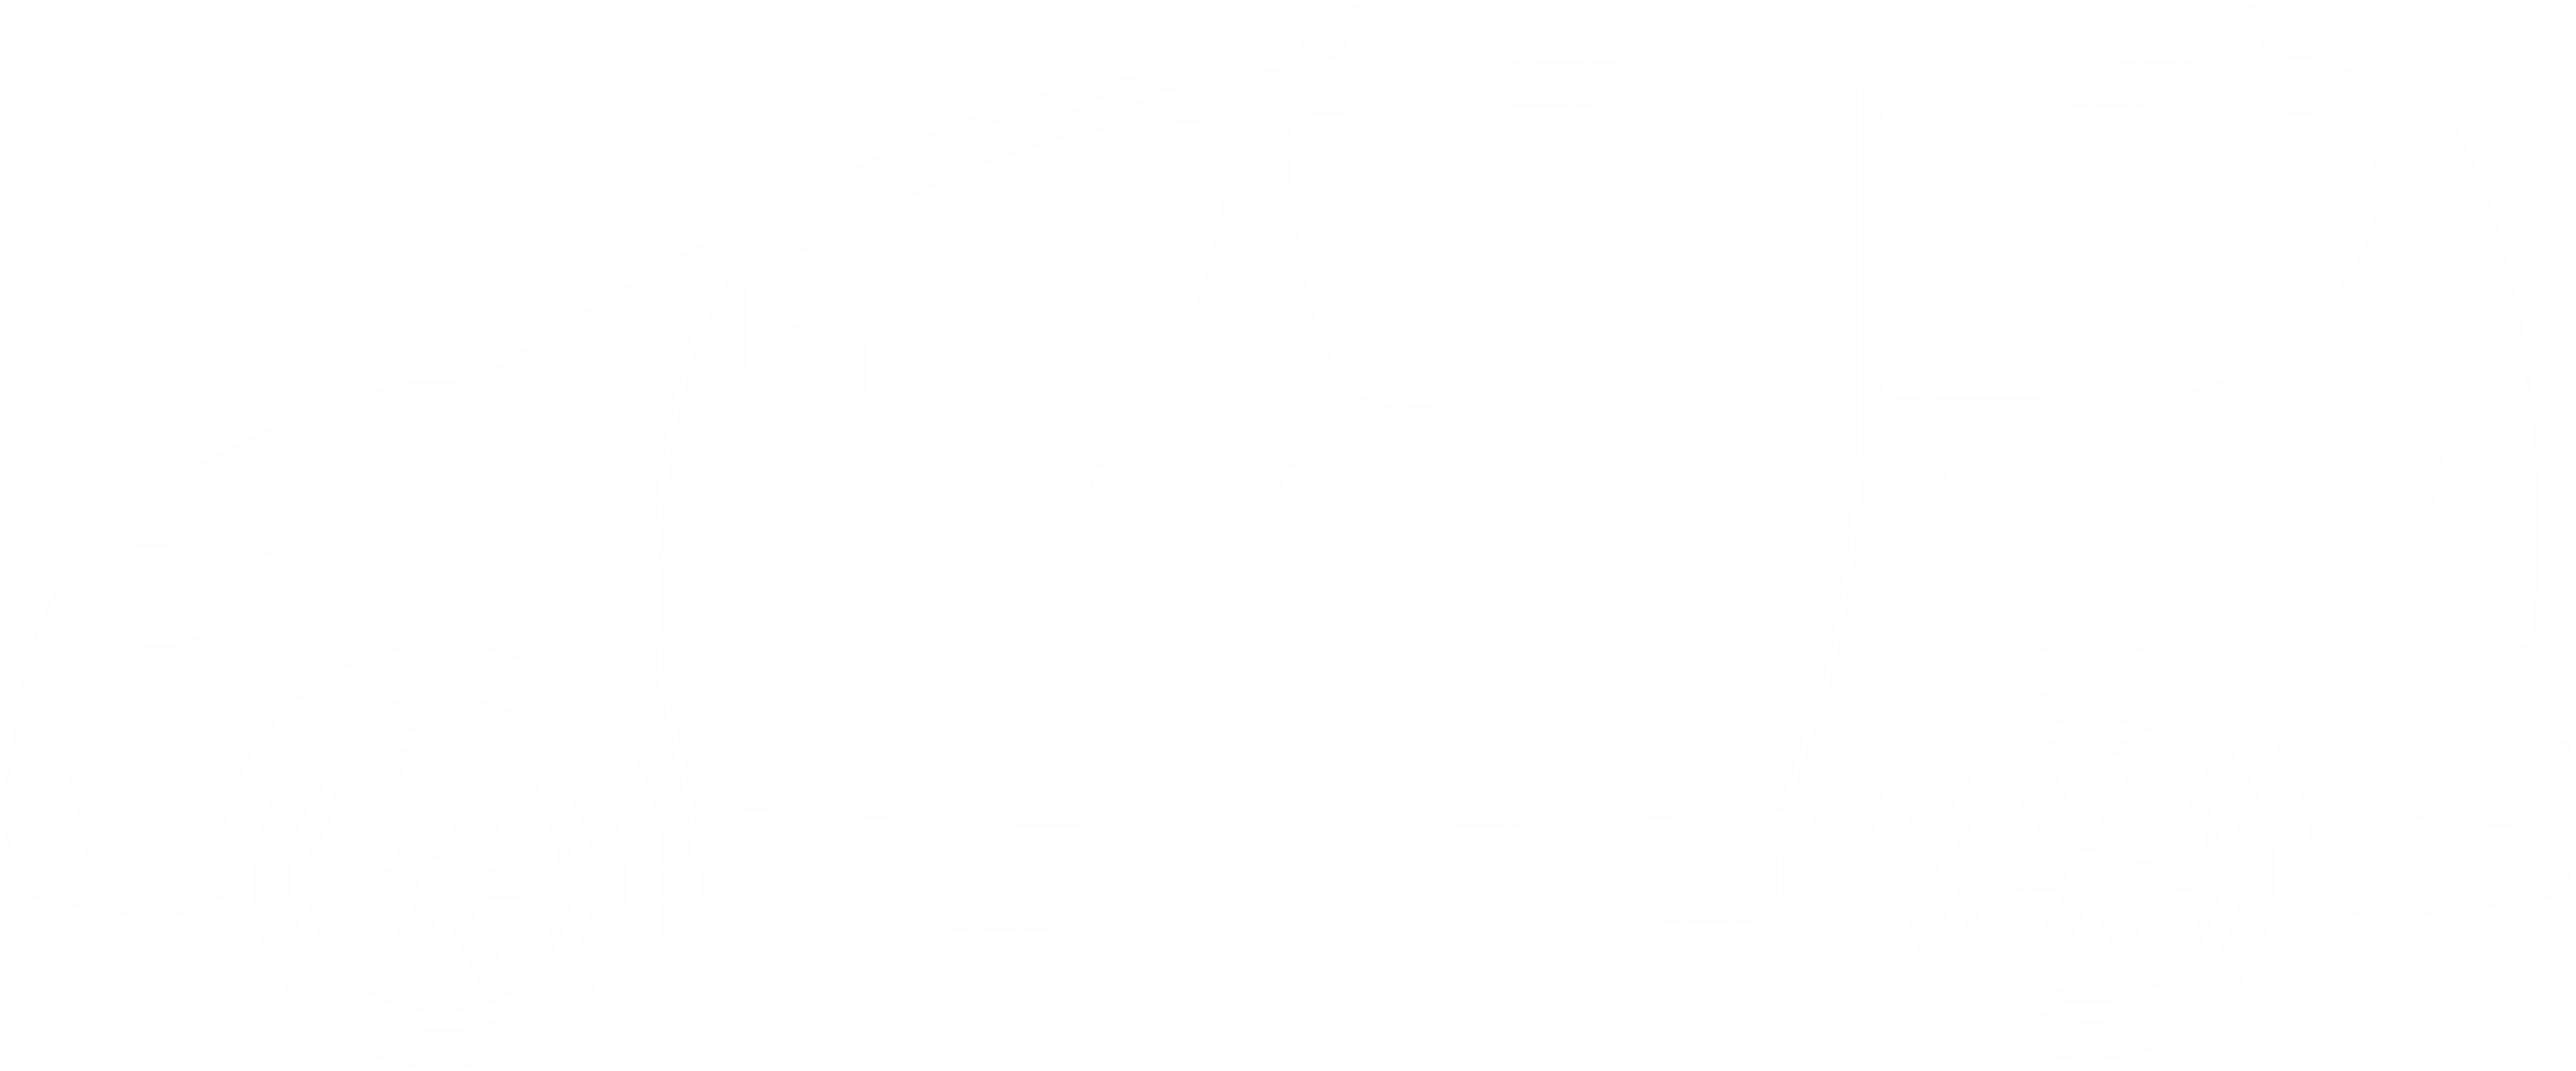 seater-minibus